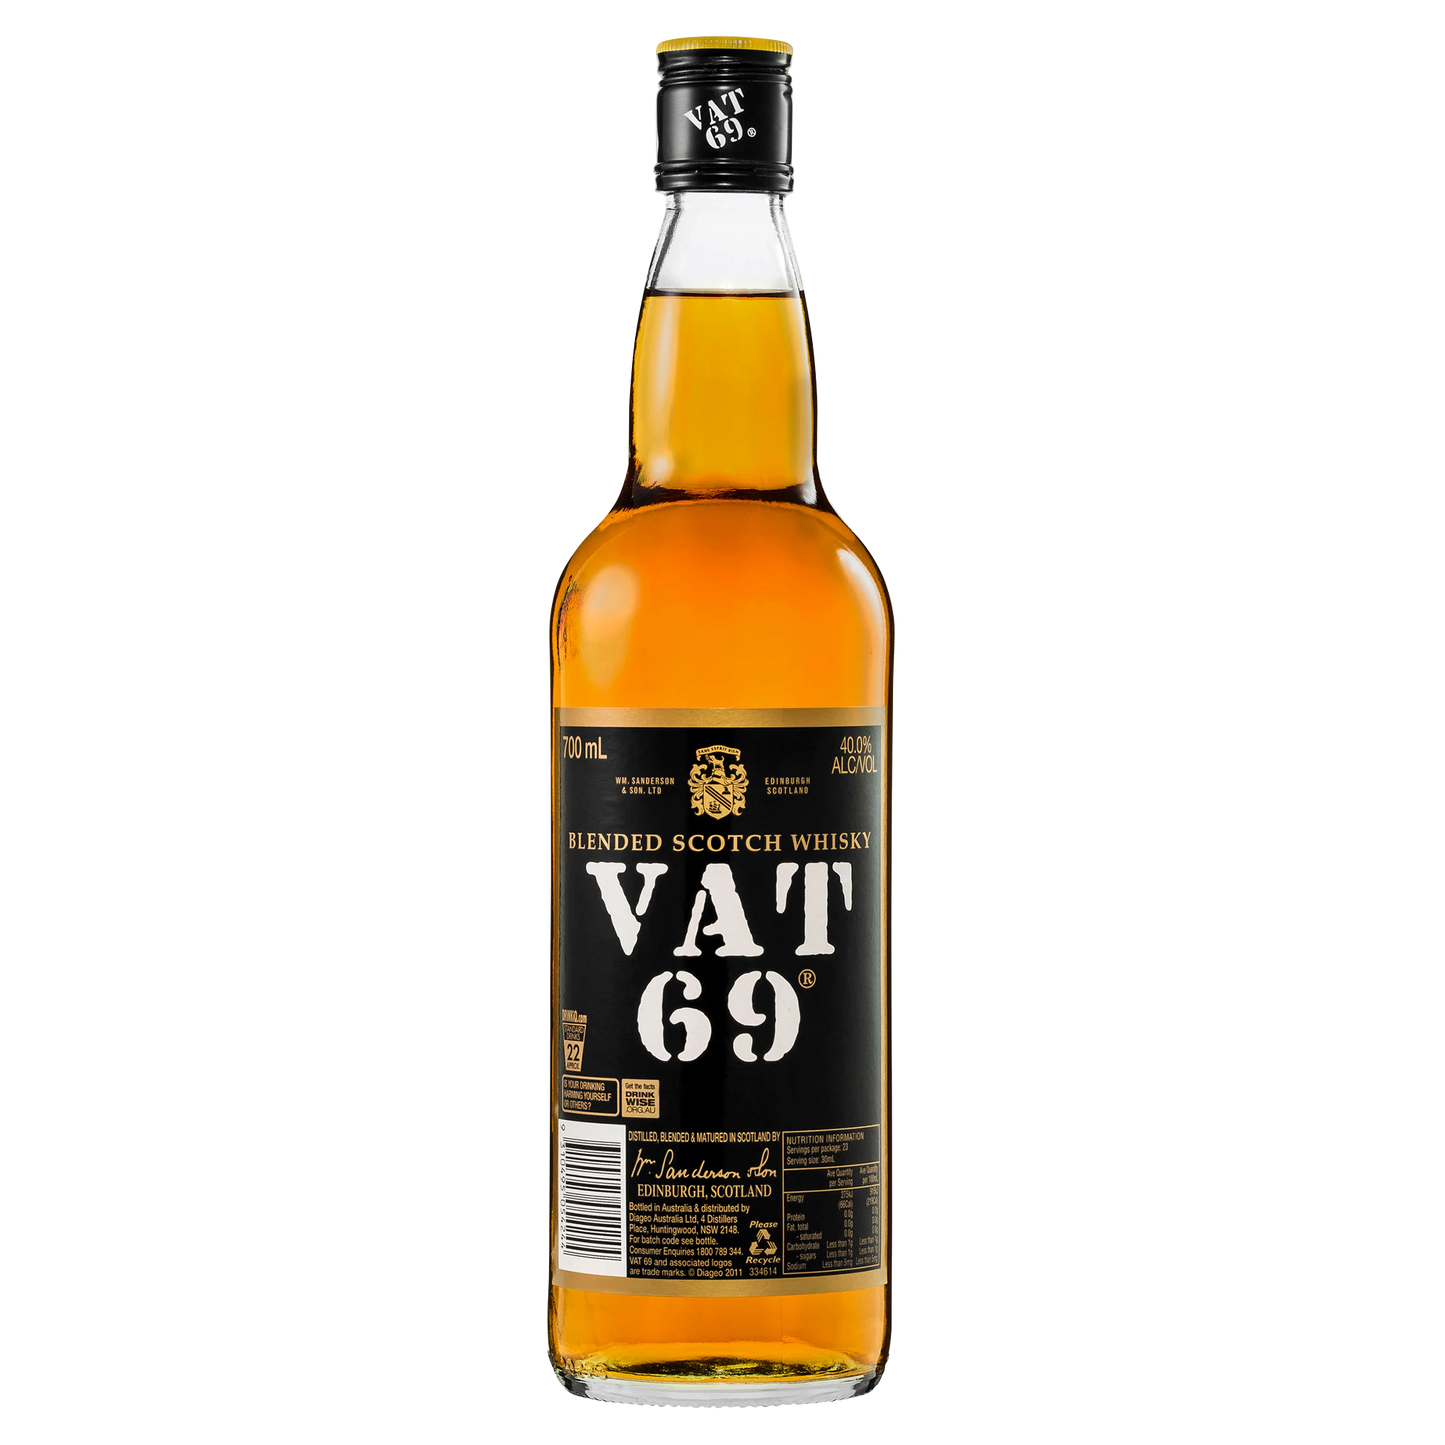 Vat 69 Scotch Whisky 700ml